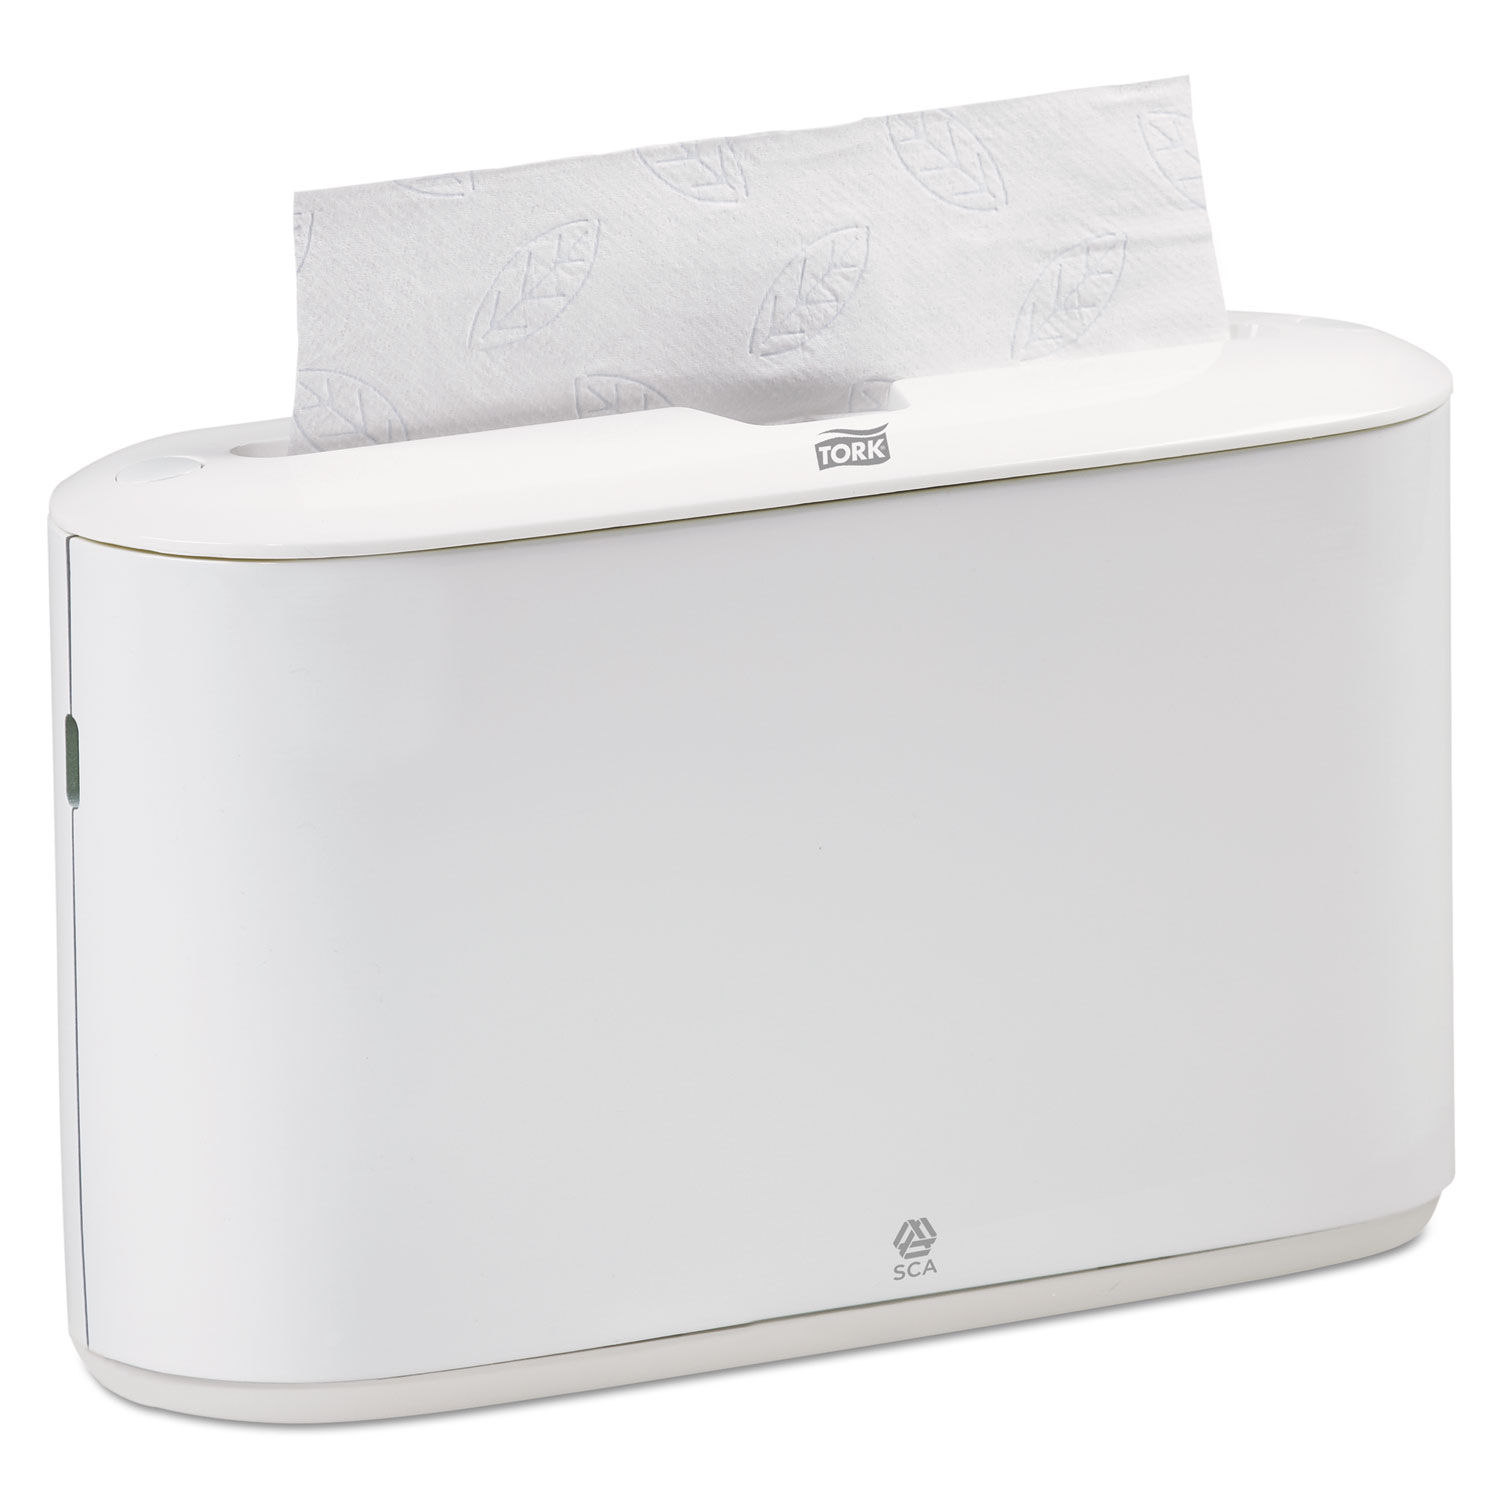 Countertop Towel Dispenser By Tork Trk302020 Ontimesupplies Com